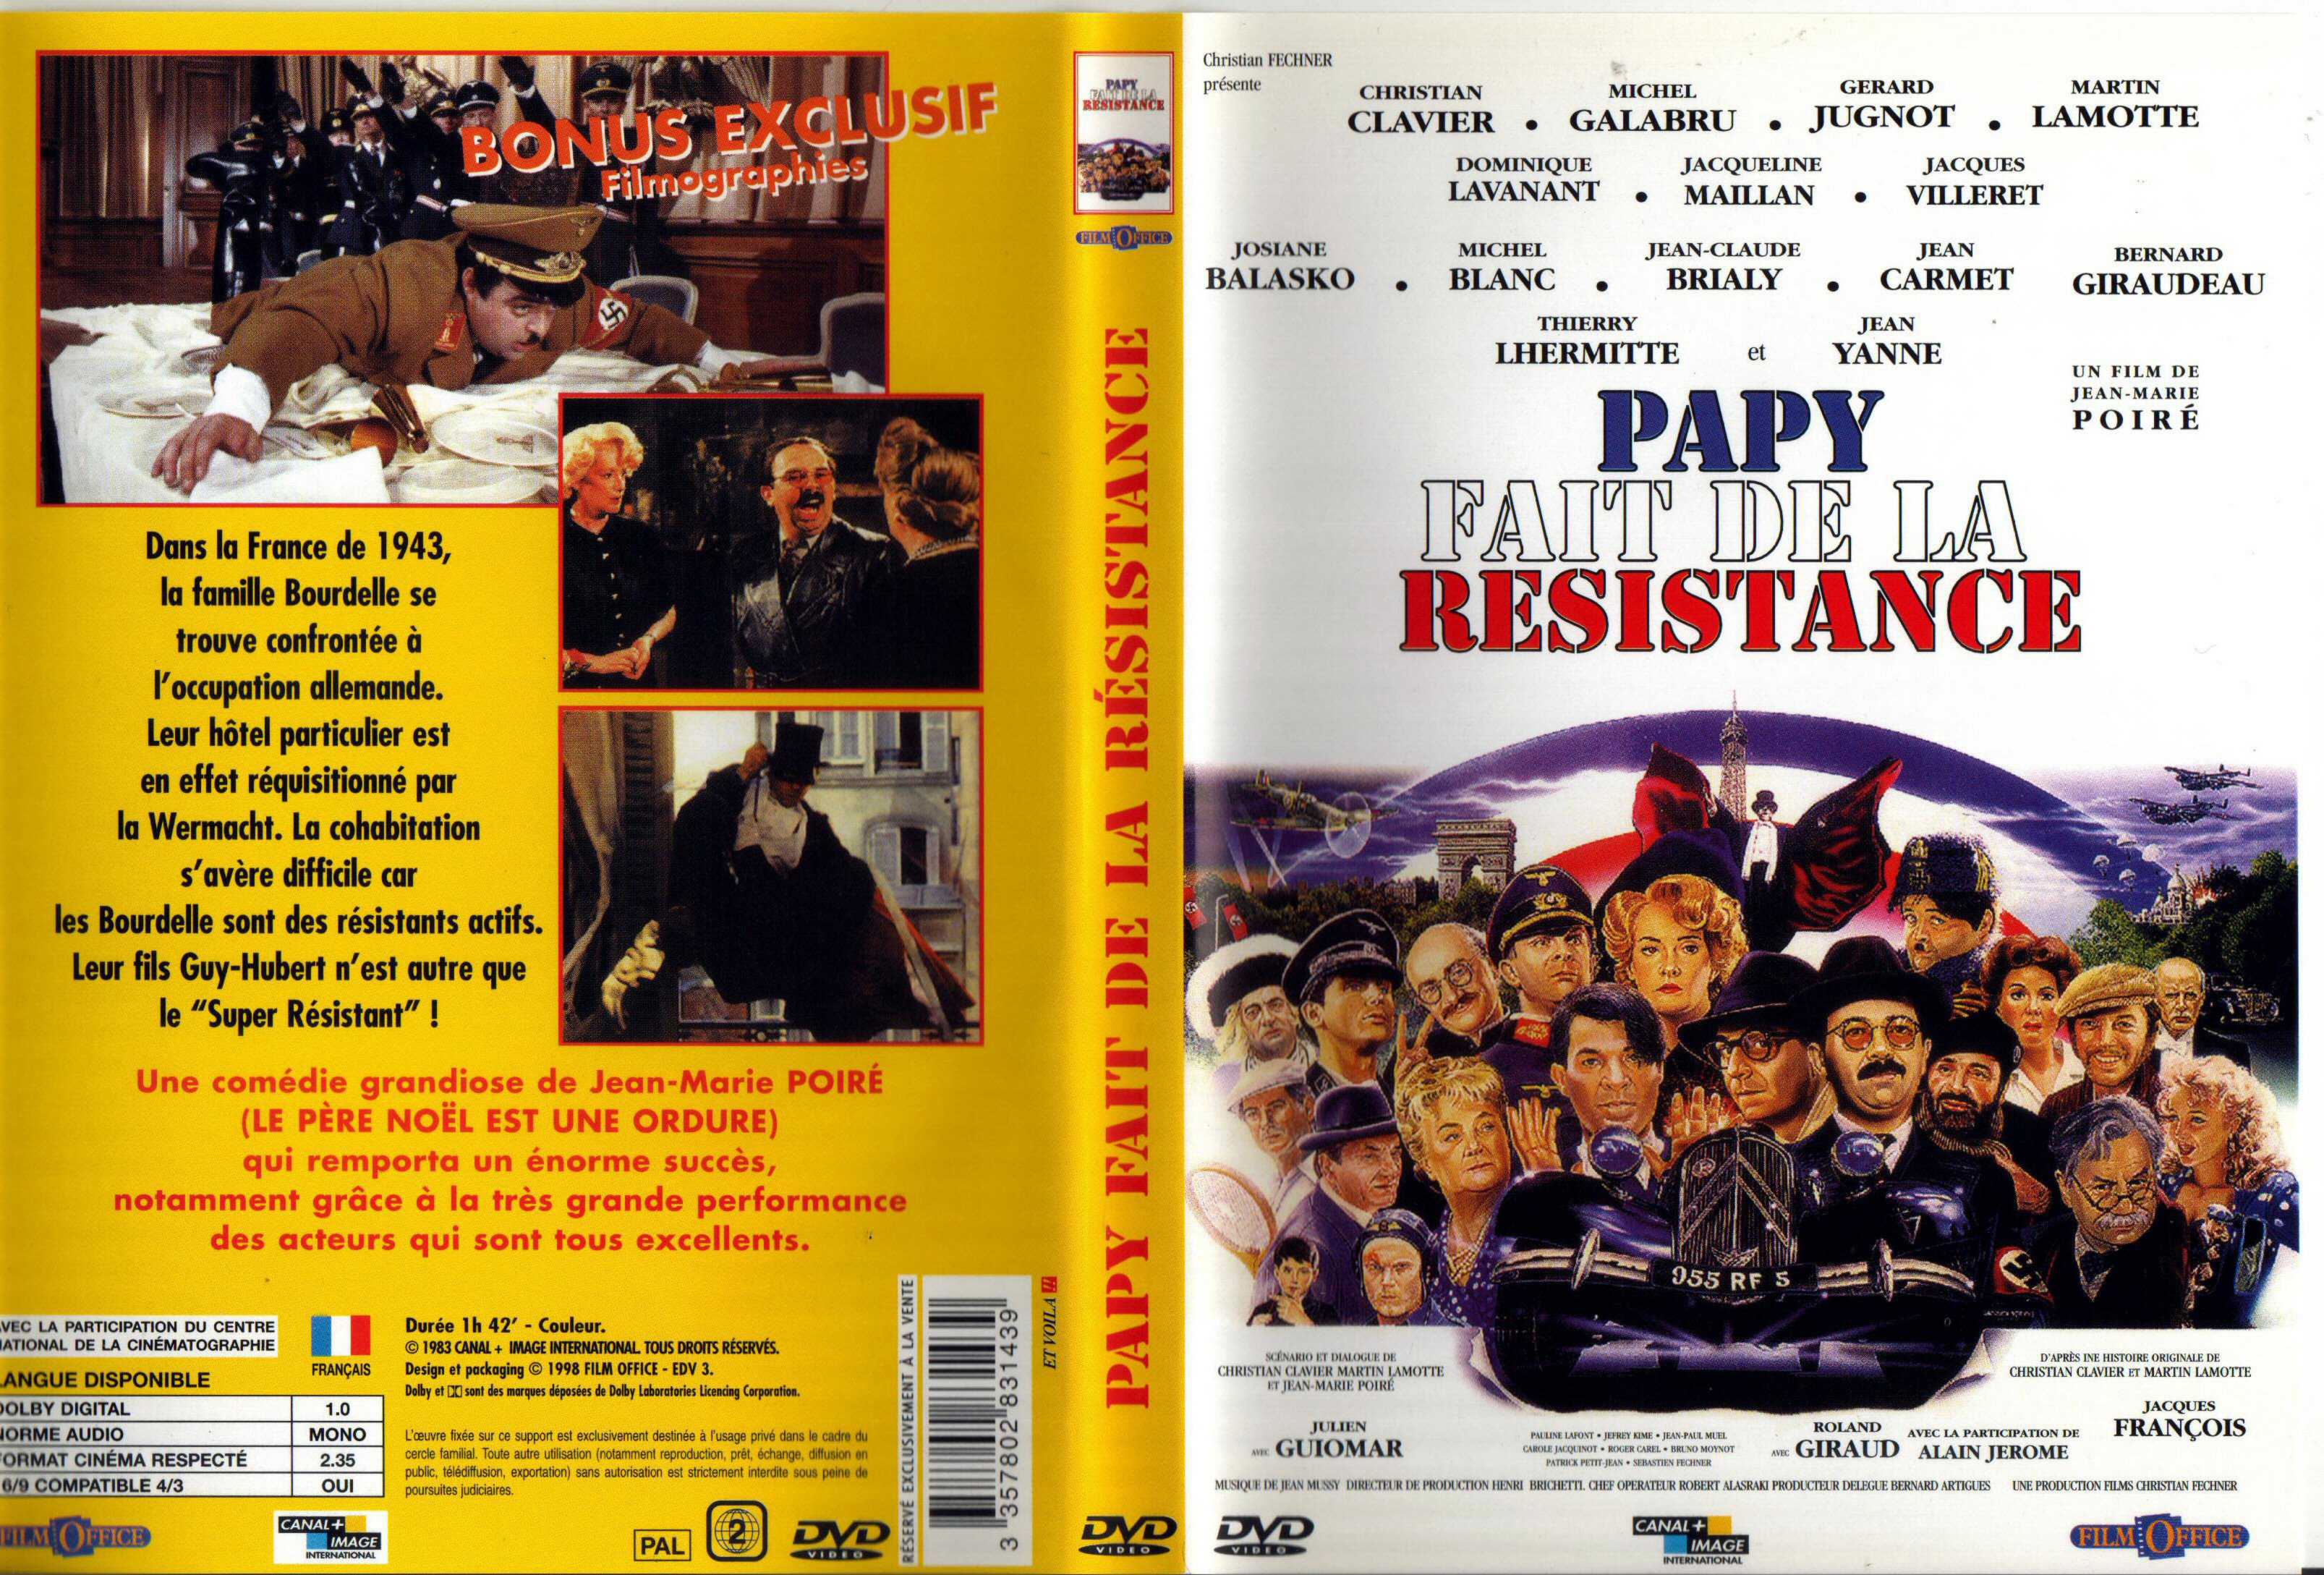 Jaquette DVD Papy fait de la rsistance v2